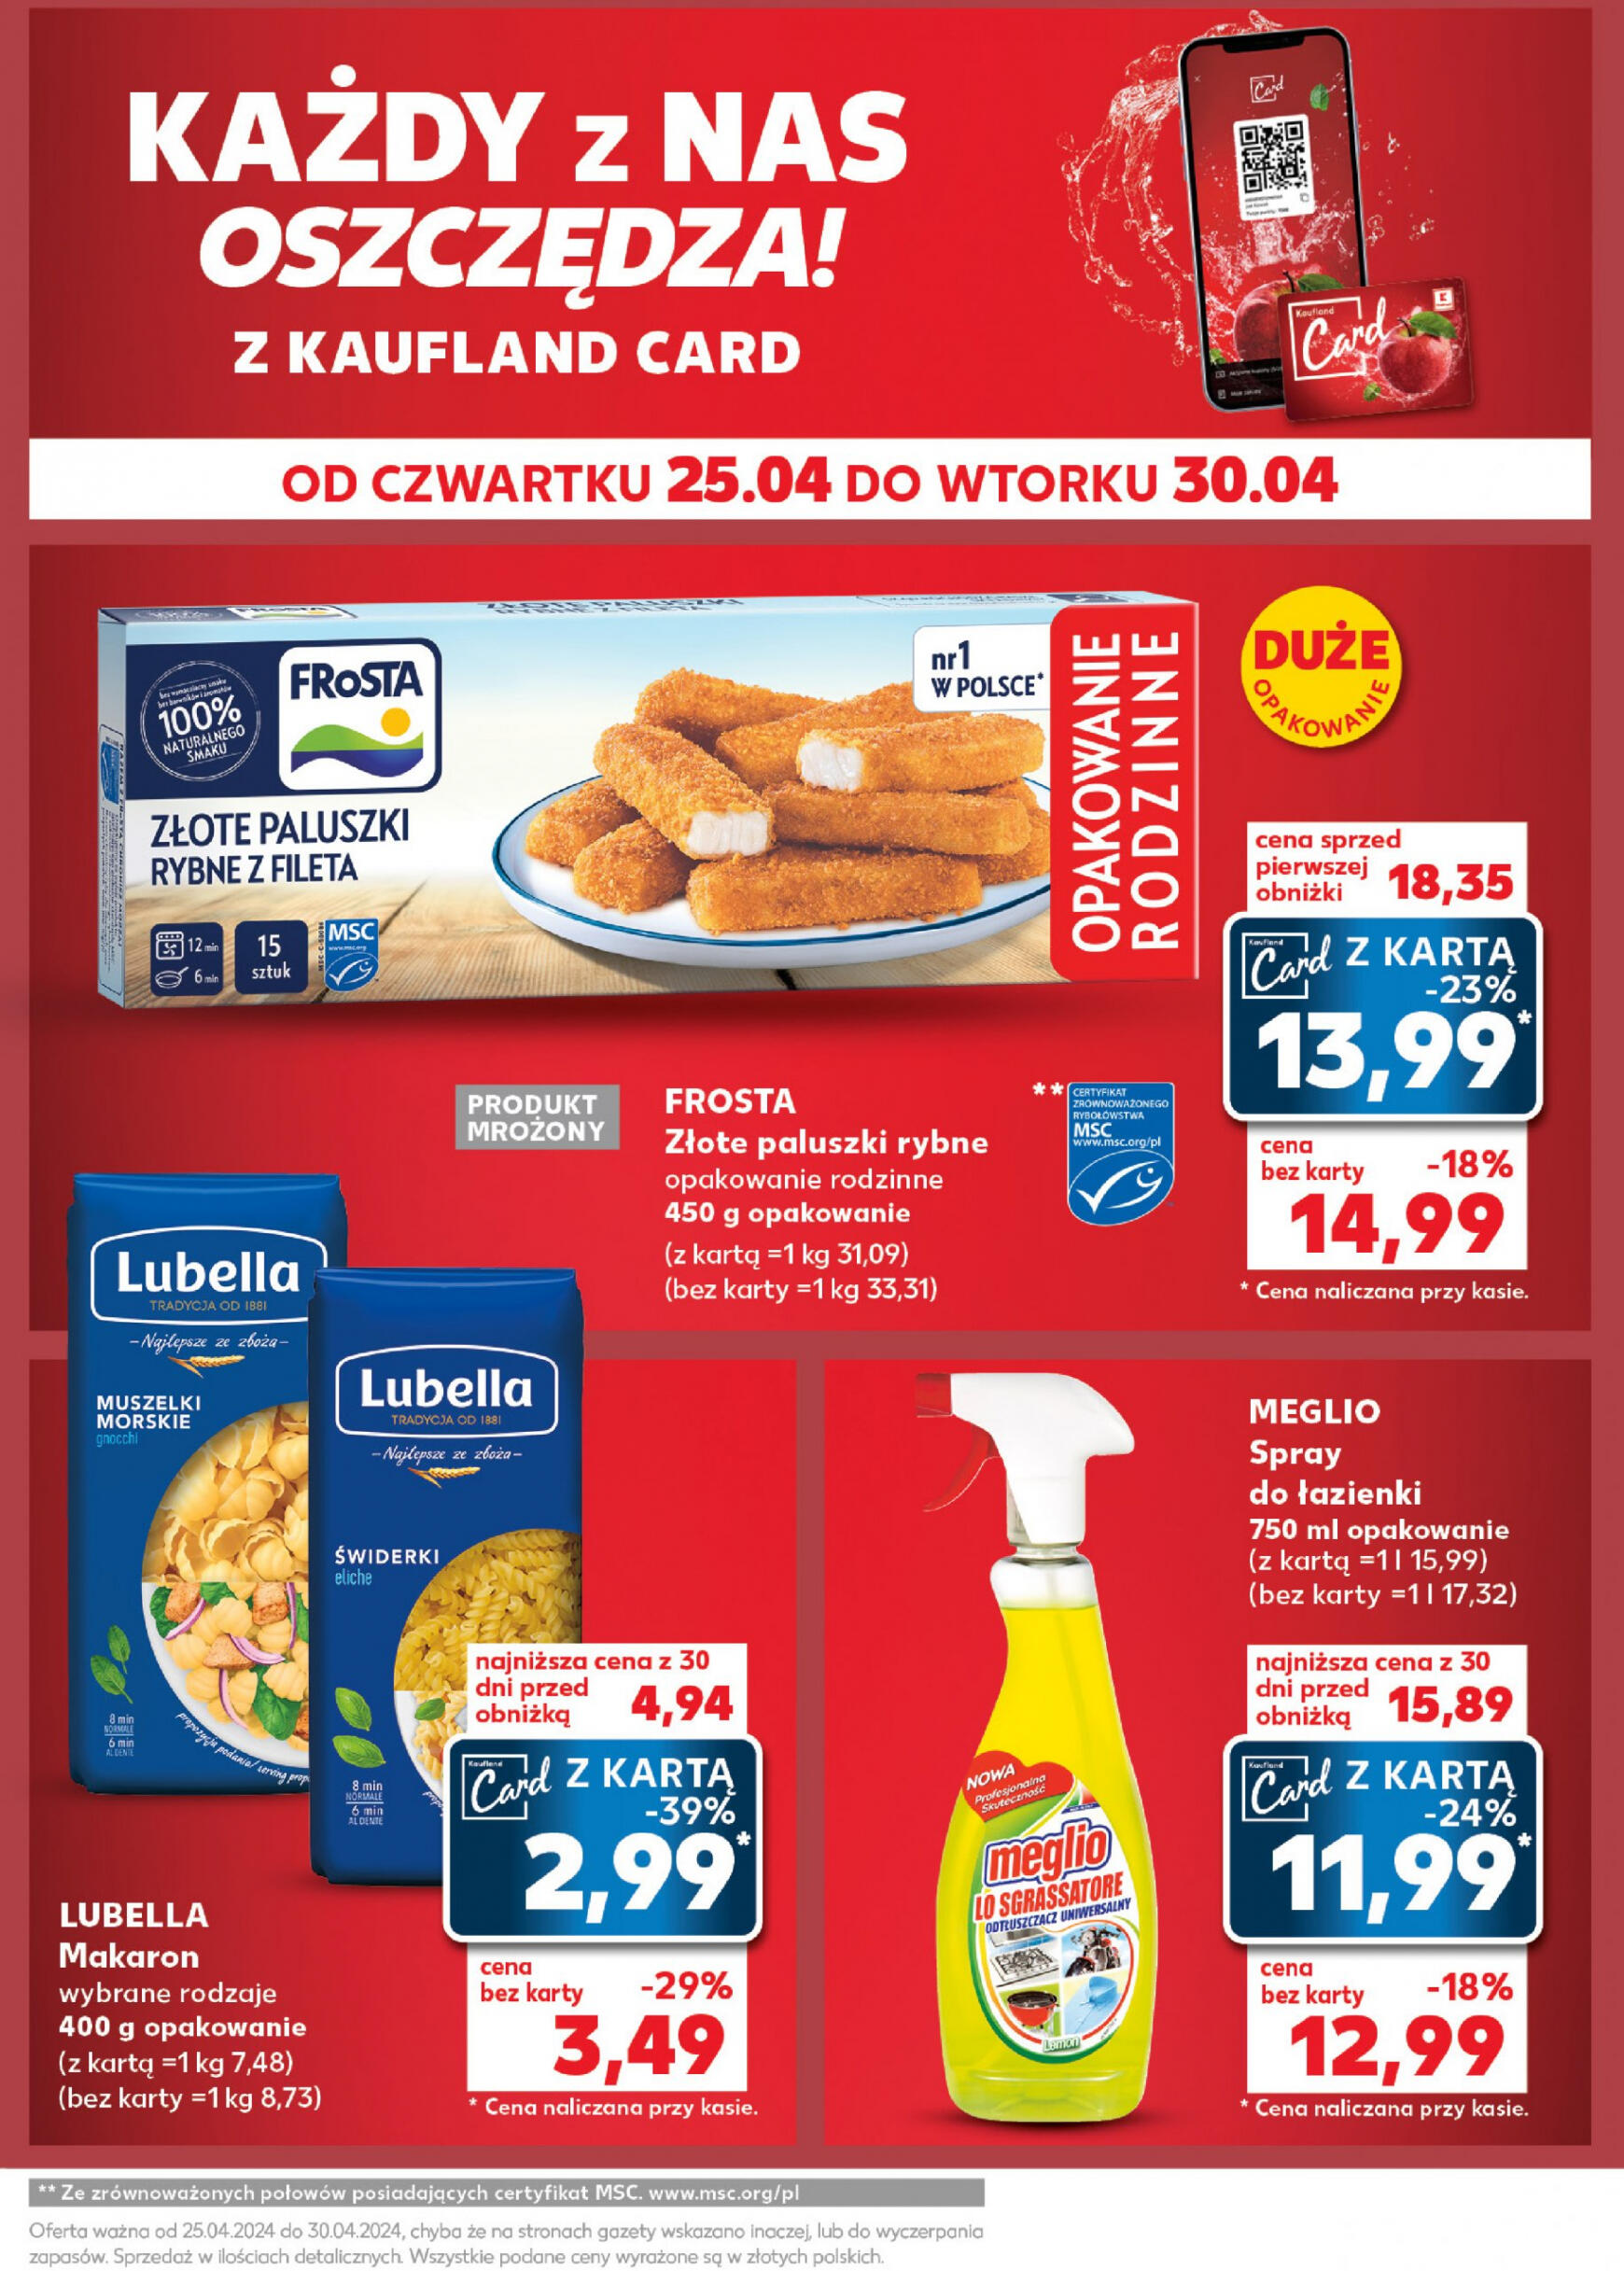 kaufland - Kaufland - Mocny Start gazetka aktualna ważna od 29.04. - 30.04. - page: 25